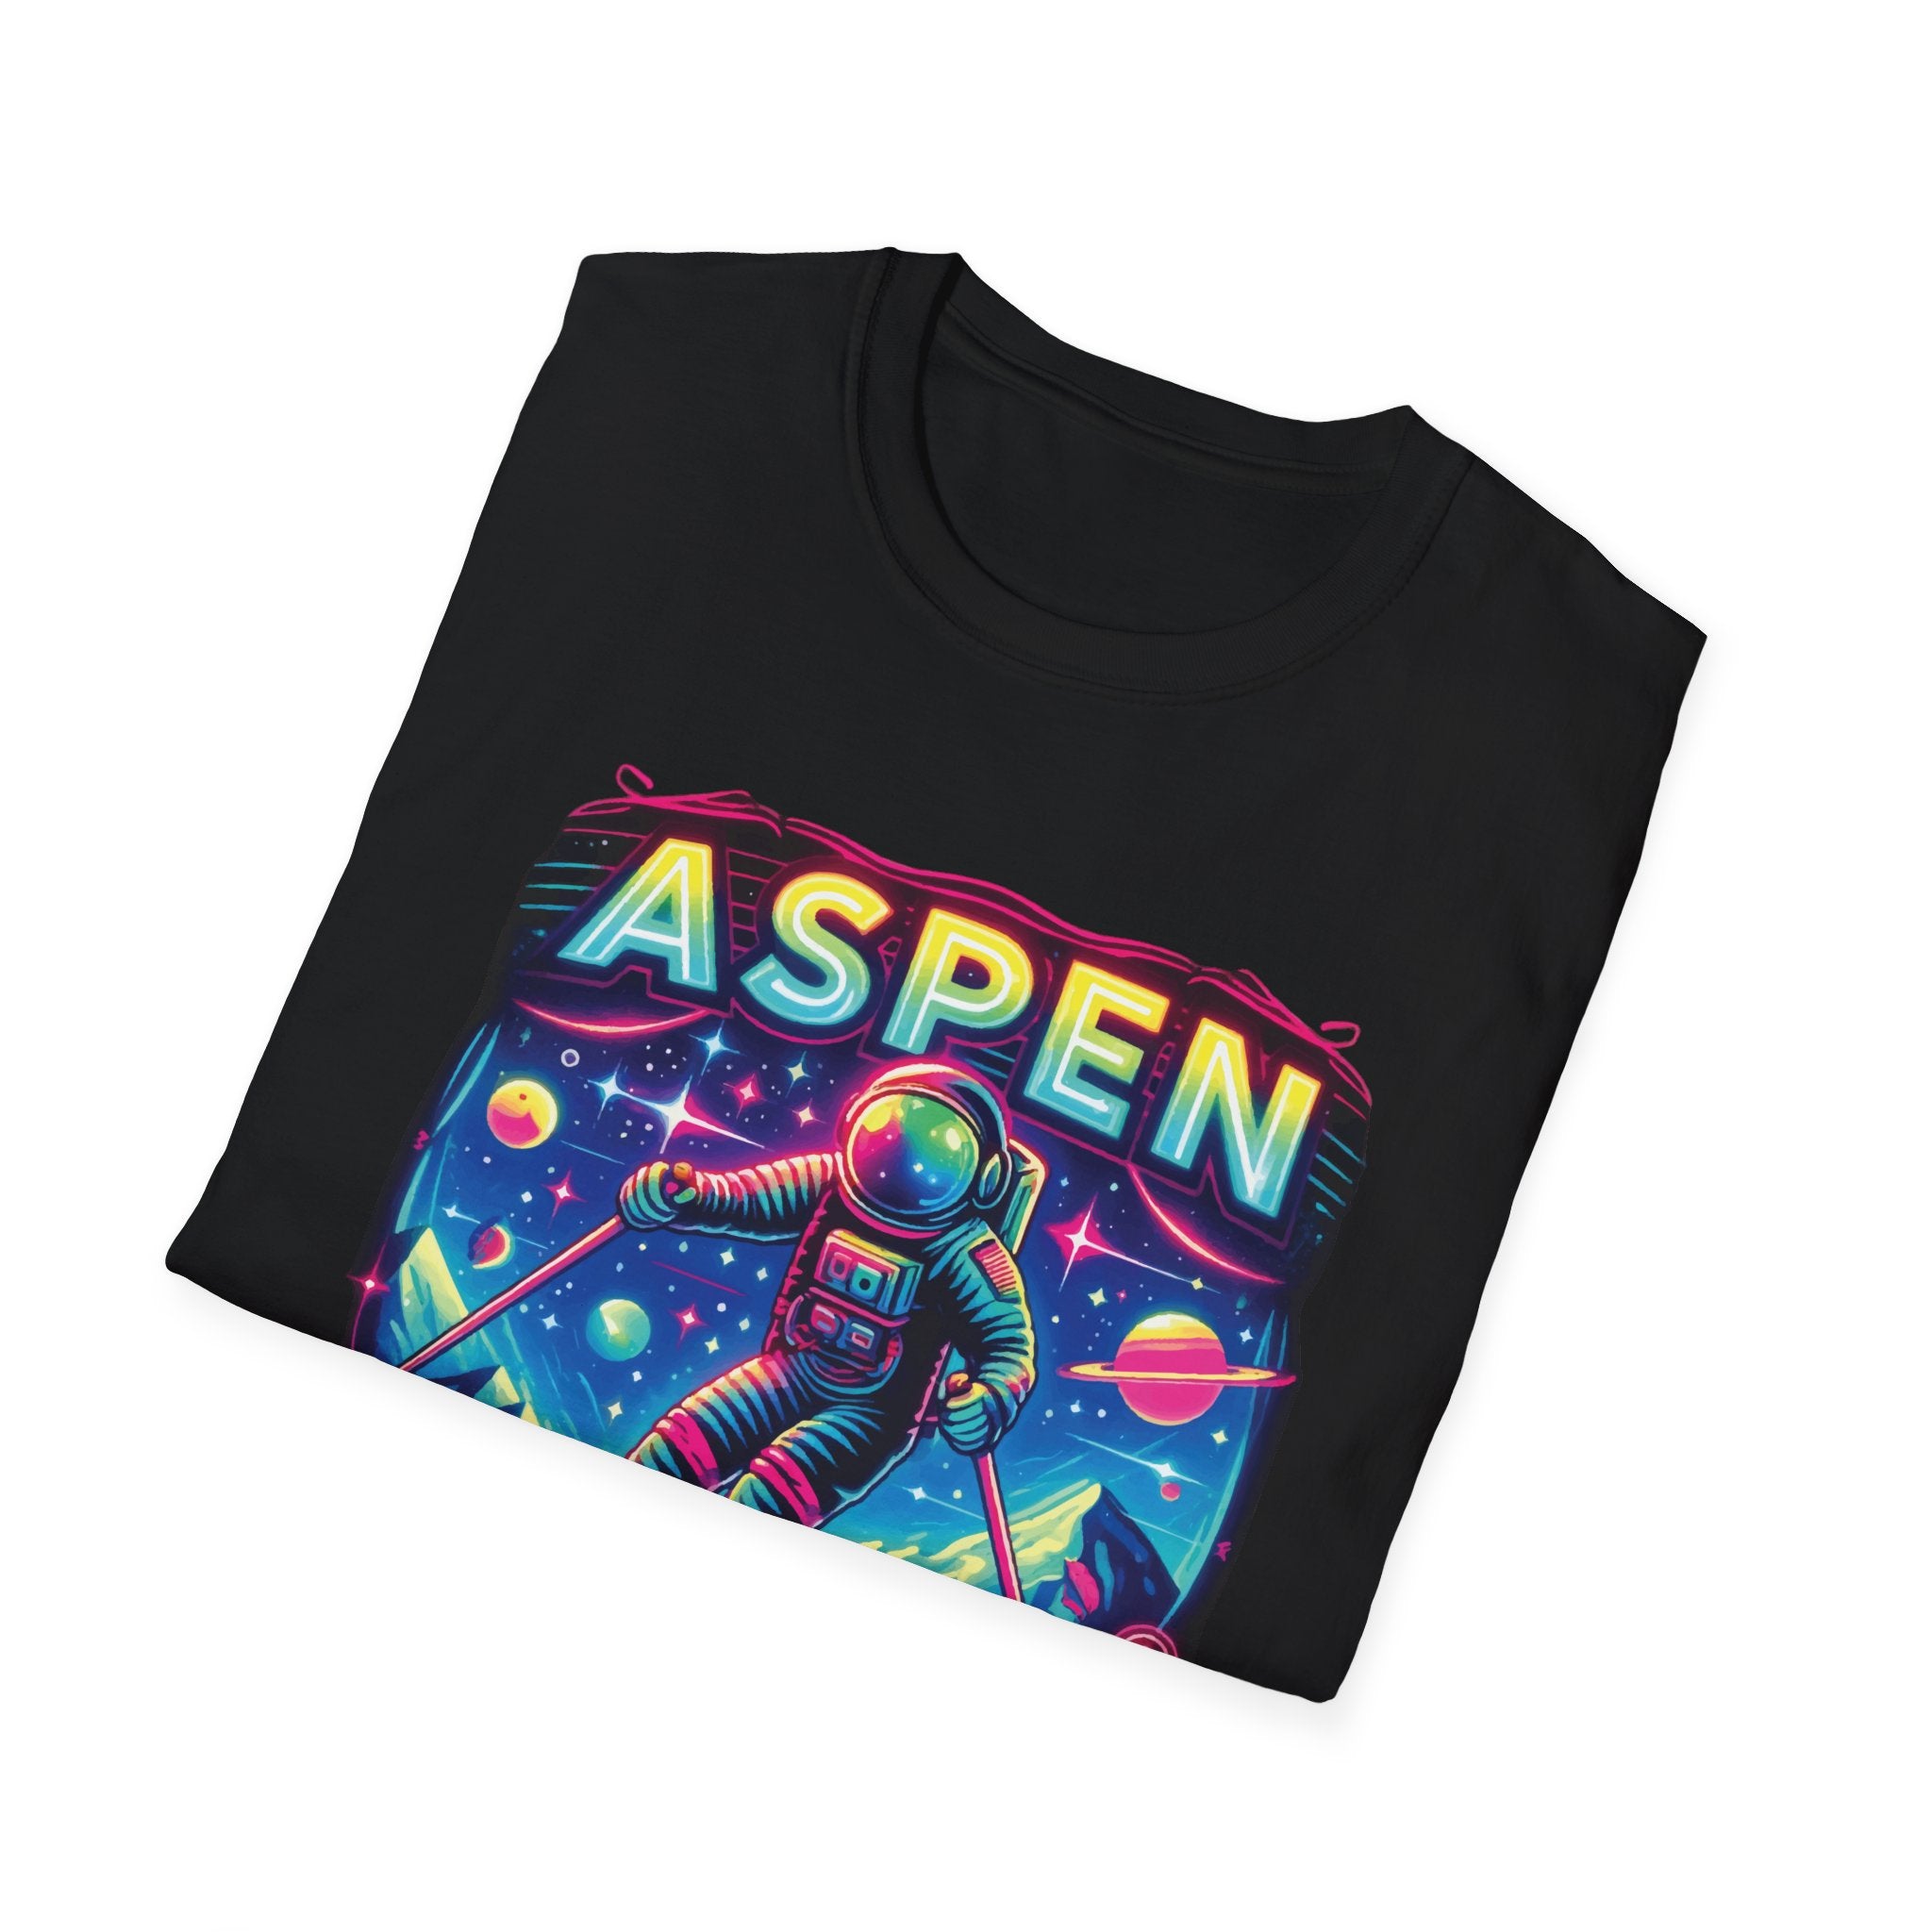 Aspen Neon Ski Club T-Shirt